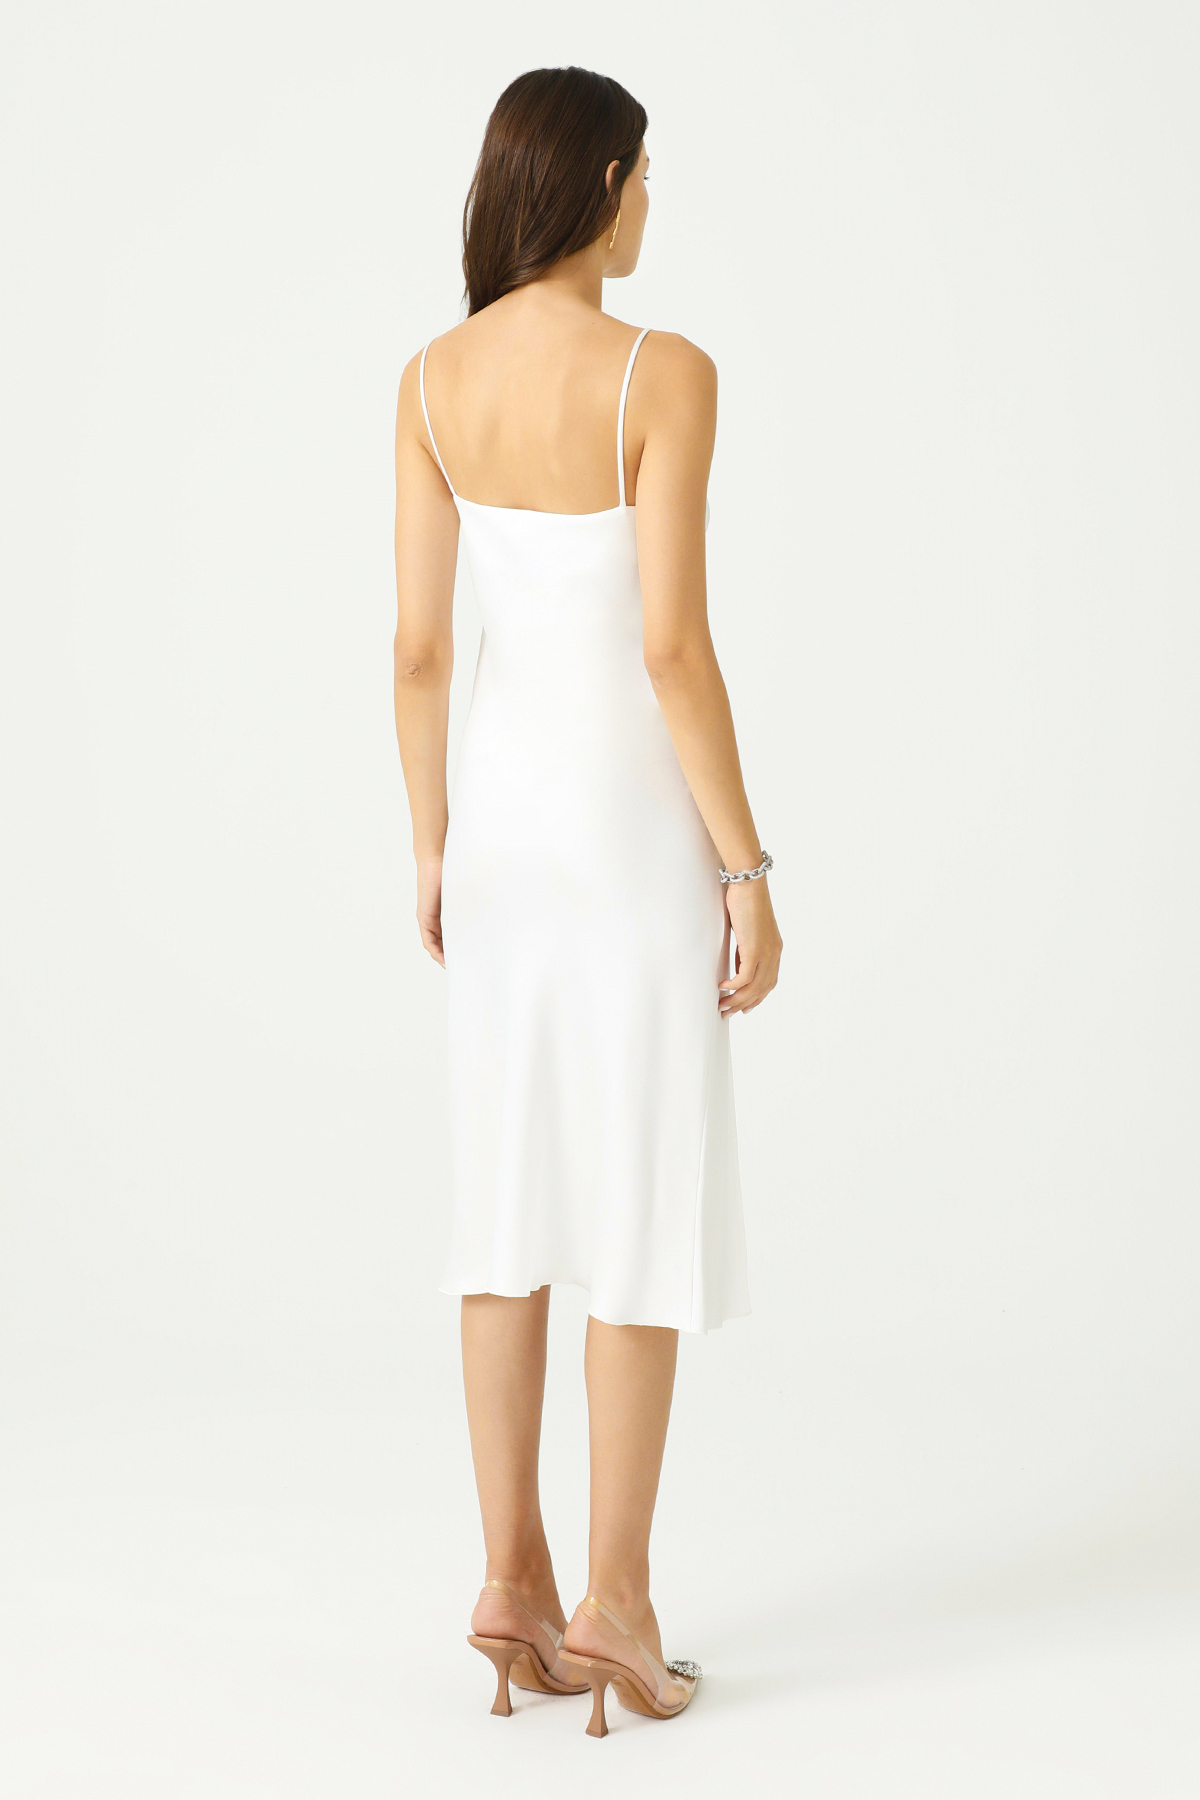 PAMELA Slit Detailed Satin White Slip Dress